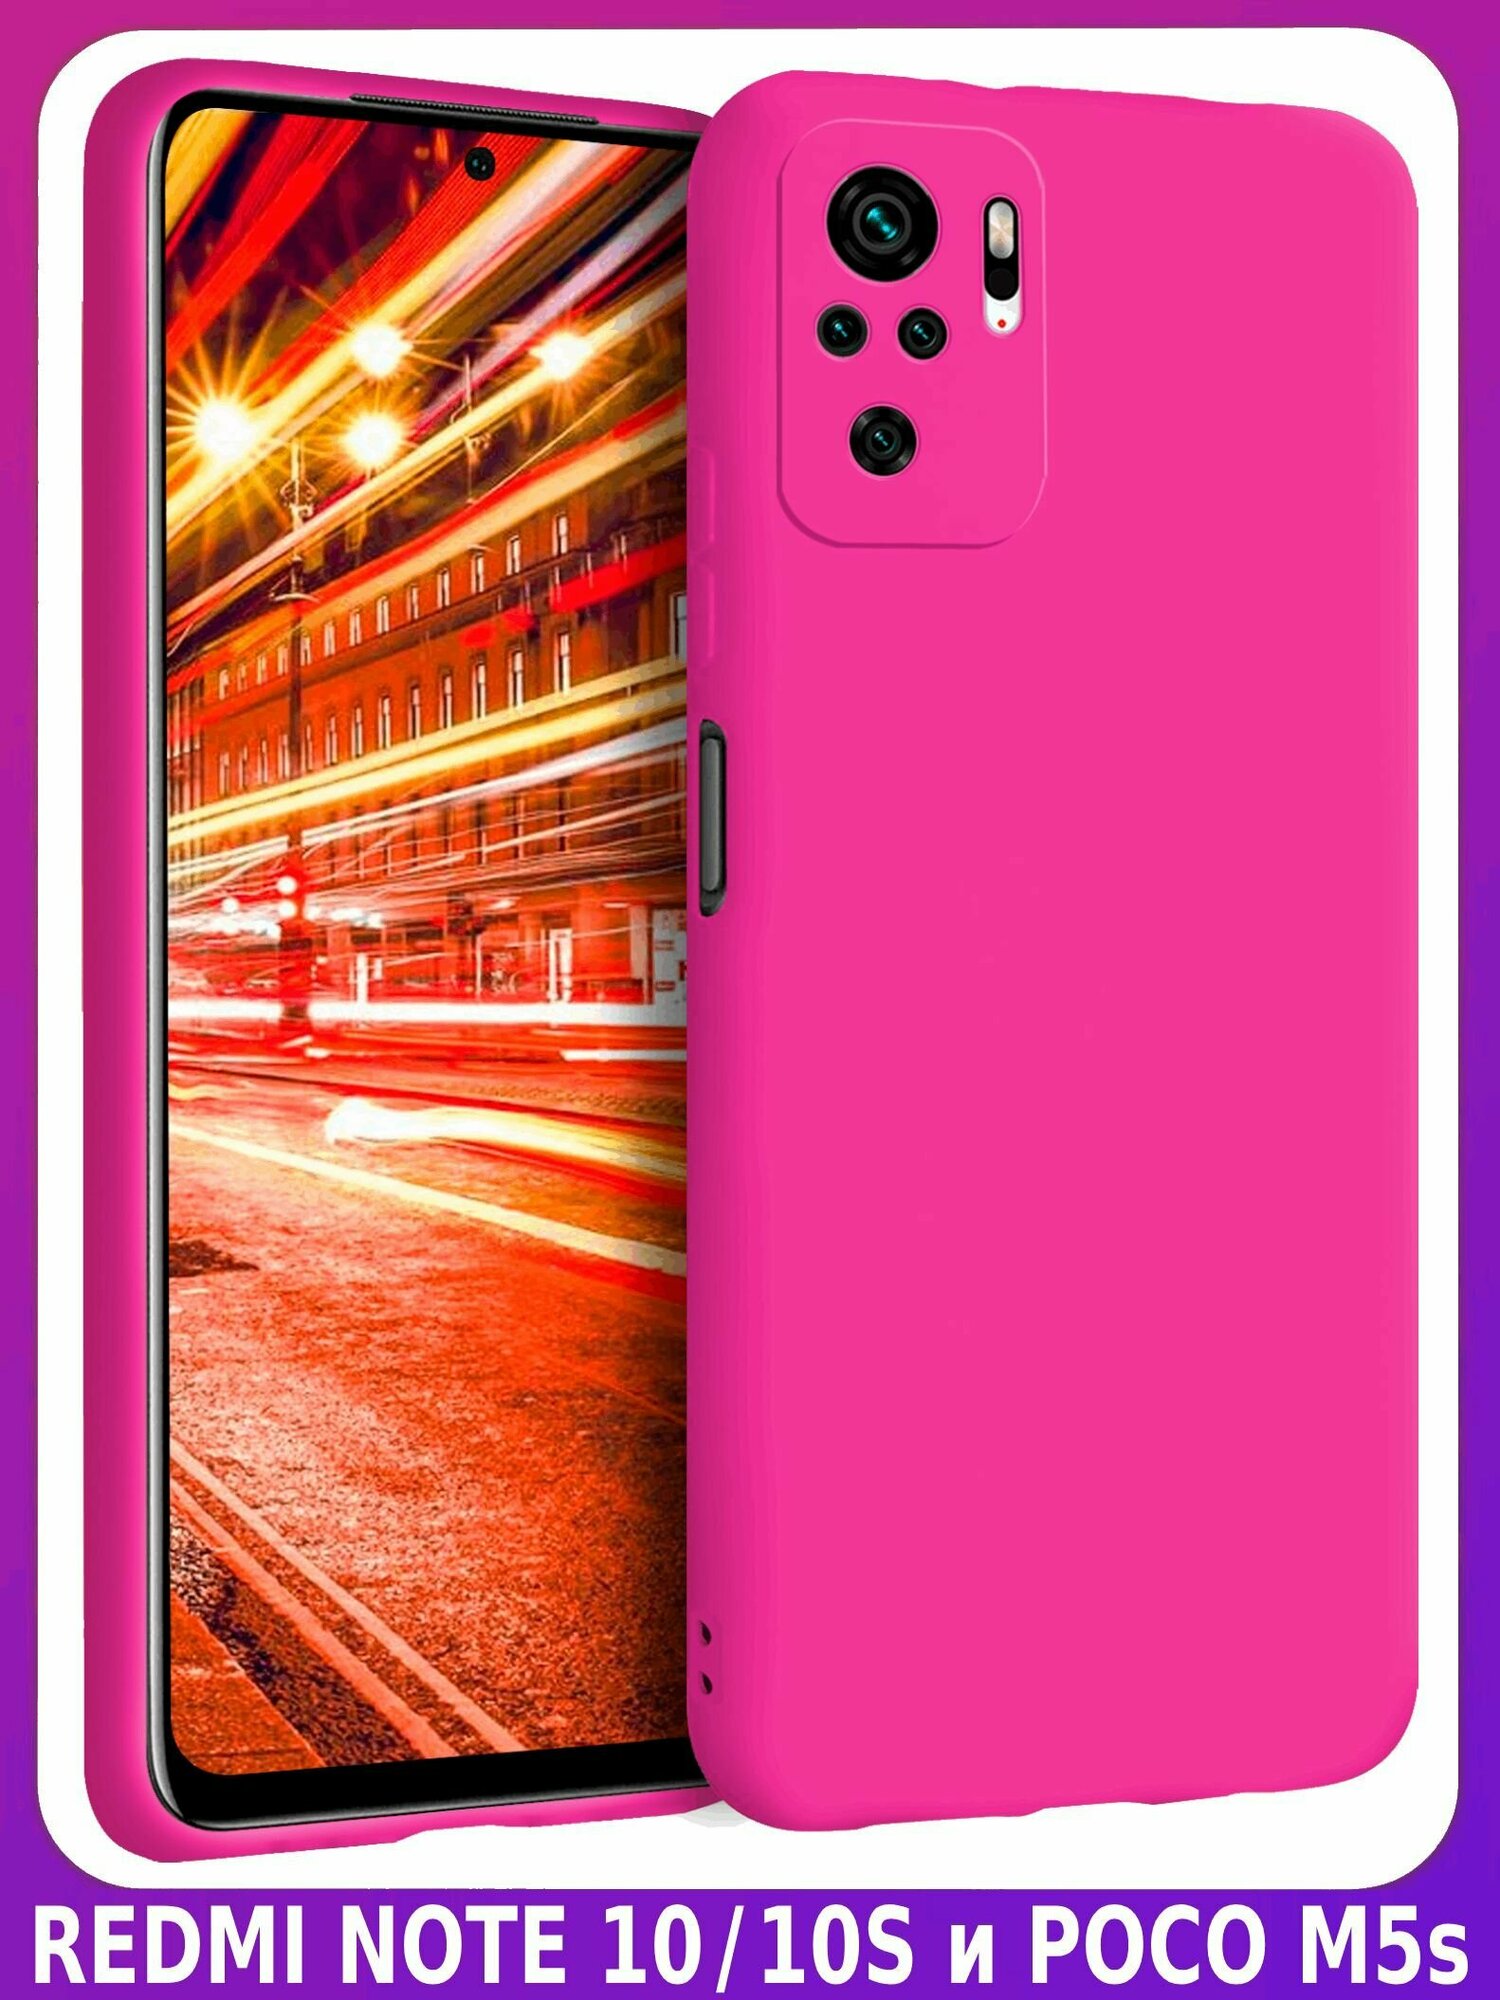 Ярко-розовый (фуксия) Soft Touch чехол класса Премиум - ХIАОМI редми ноут 10/10S и поко M5s